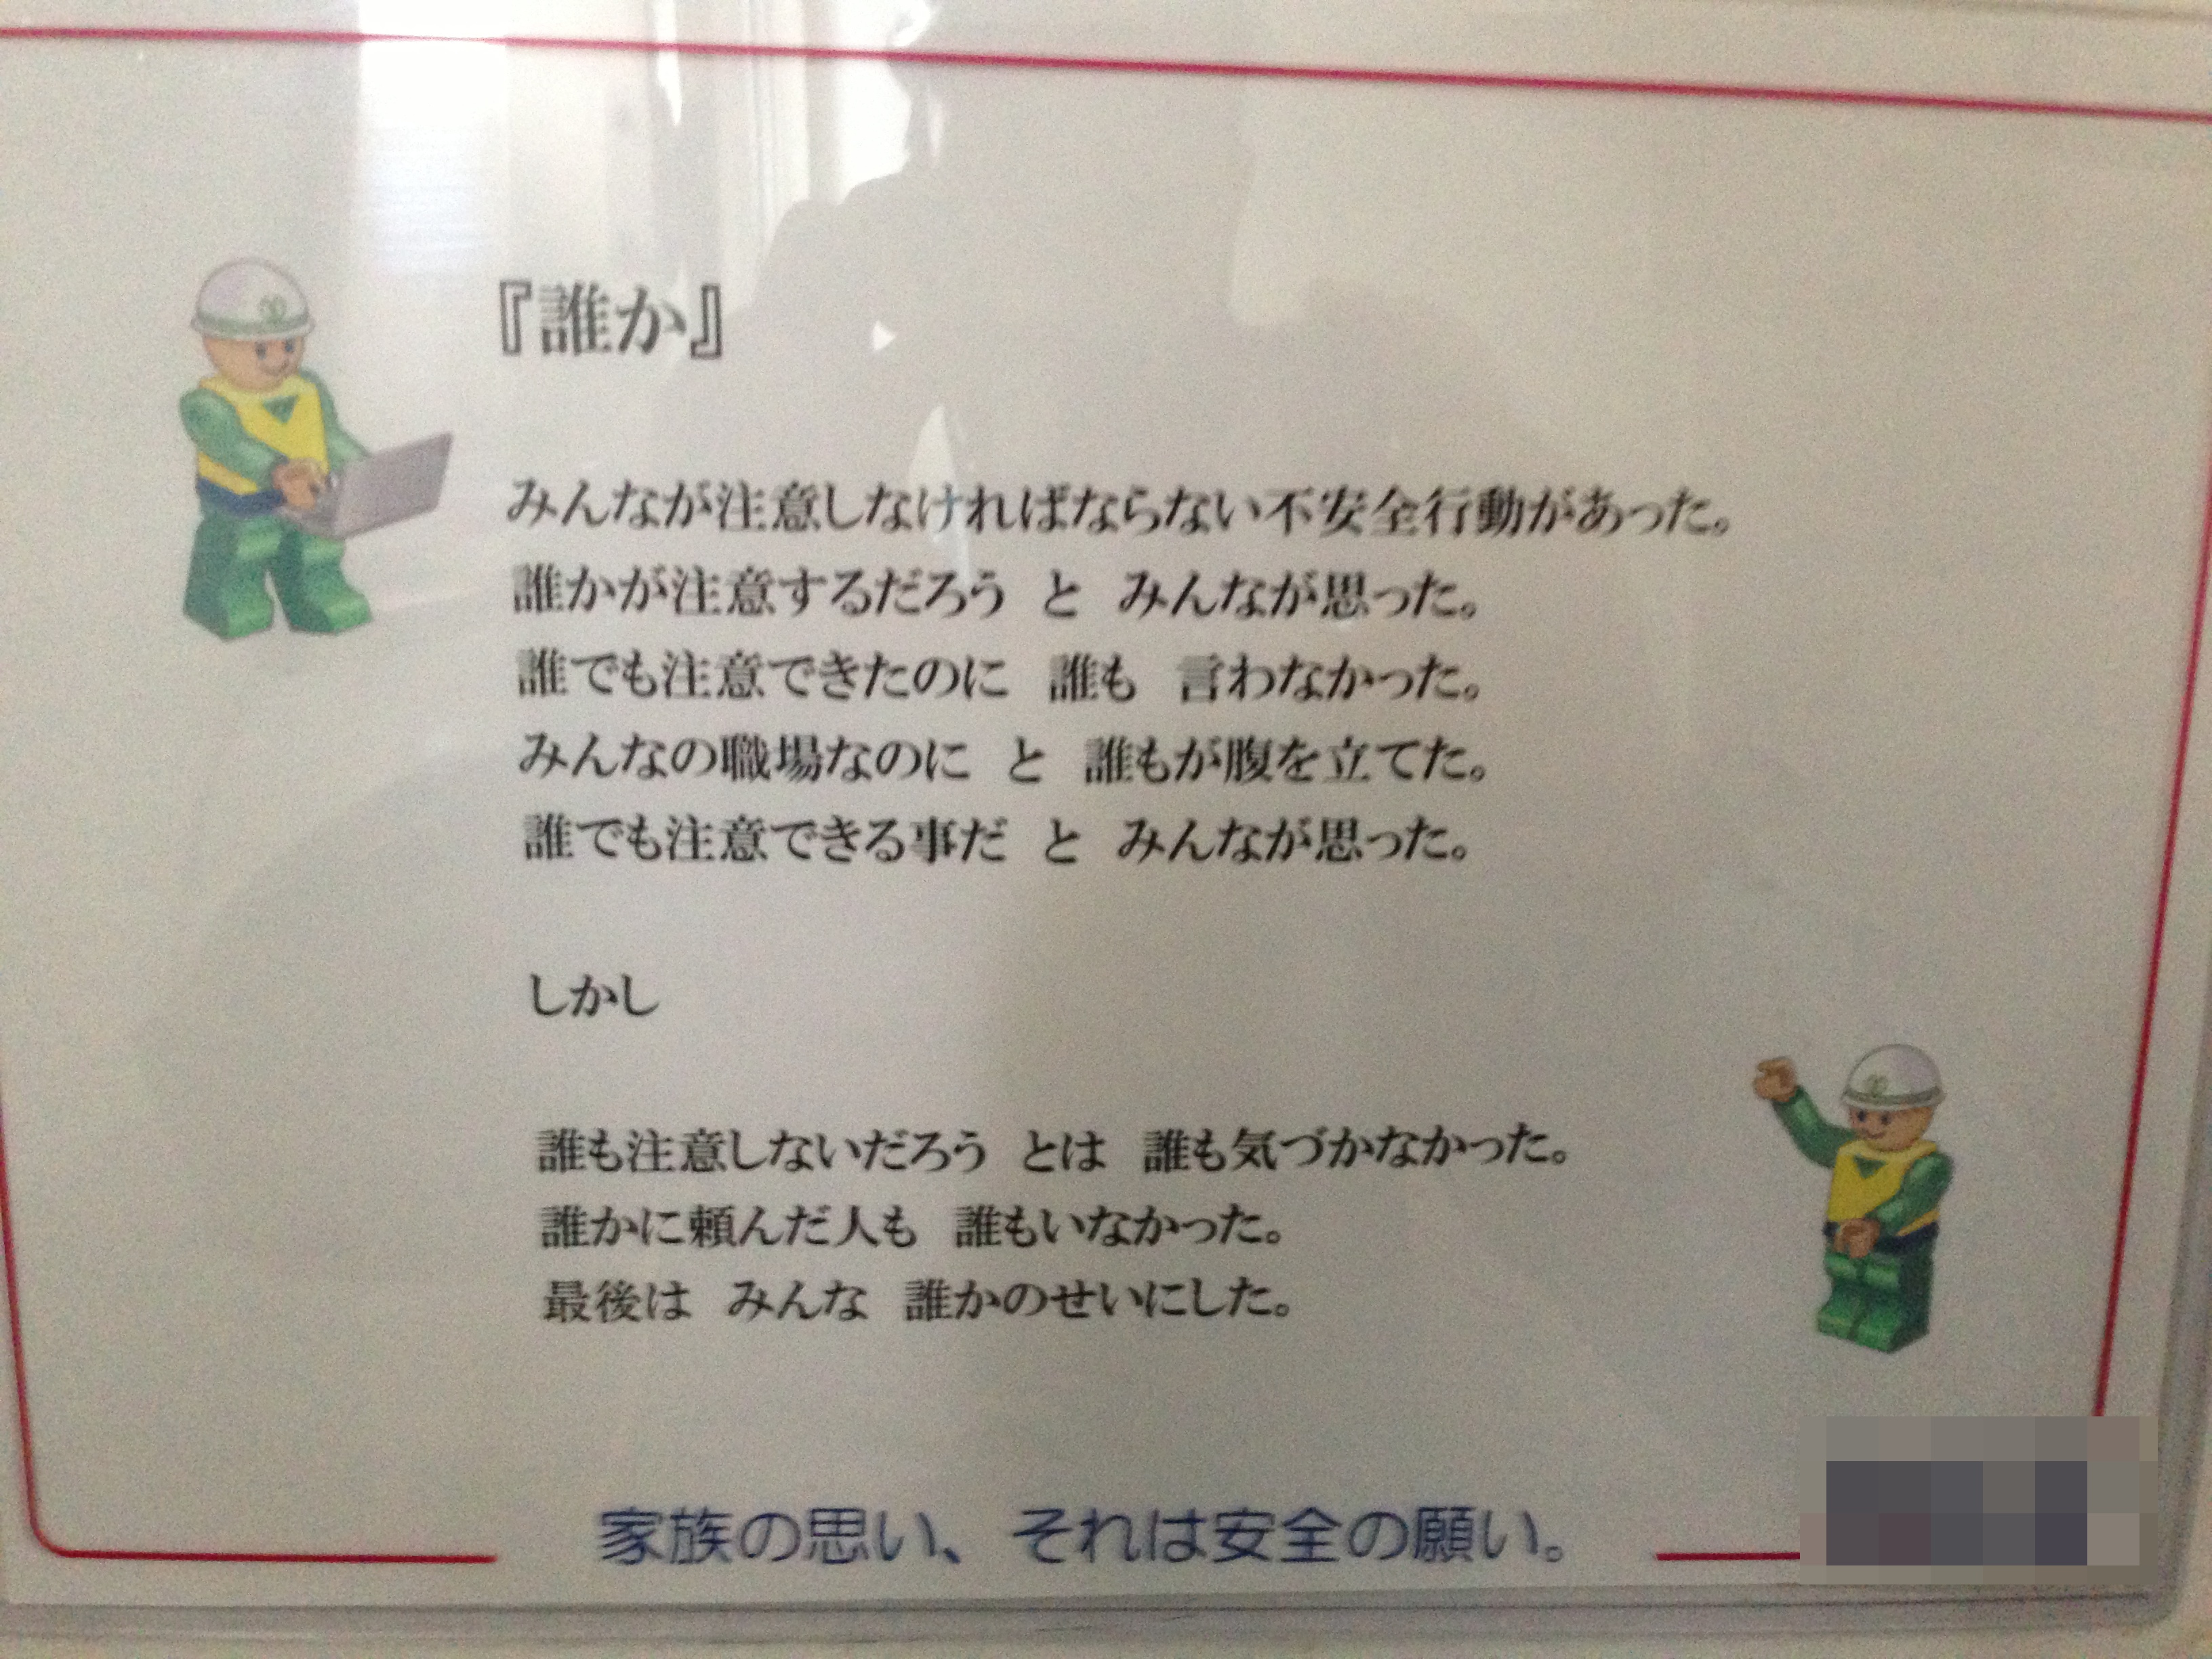 とある工事現場のトイレで見つけた素敵な貼り紙 It関連企業 運送会社の代表 福田健児のブログ